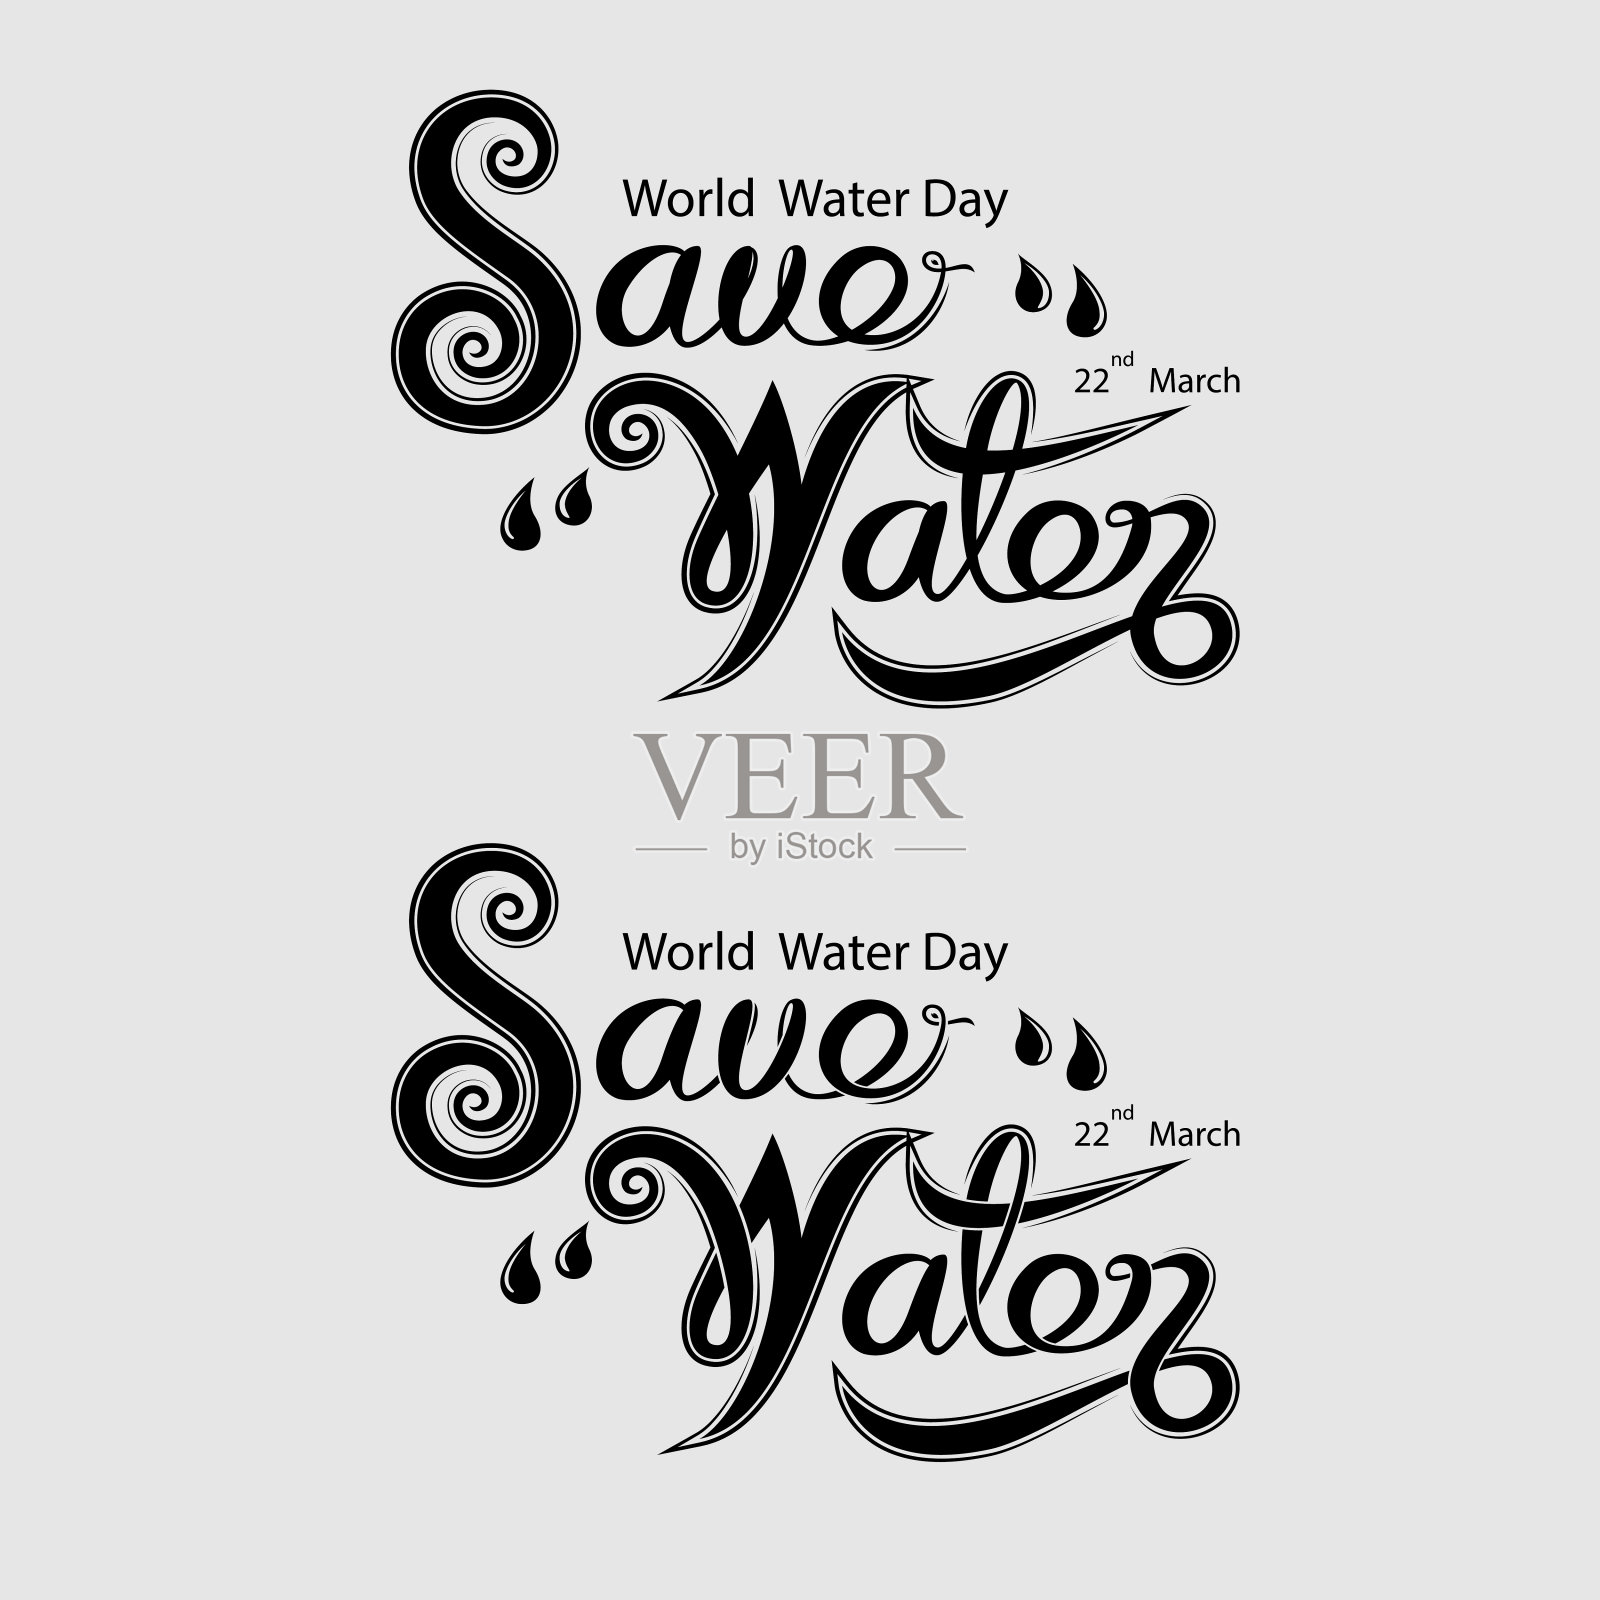 黑色节水排印设计元素。世界水日标志。3月22日。世界水日概念的极简设计。矢量图插画图片素材